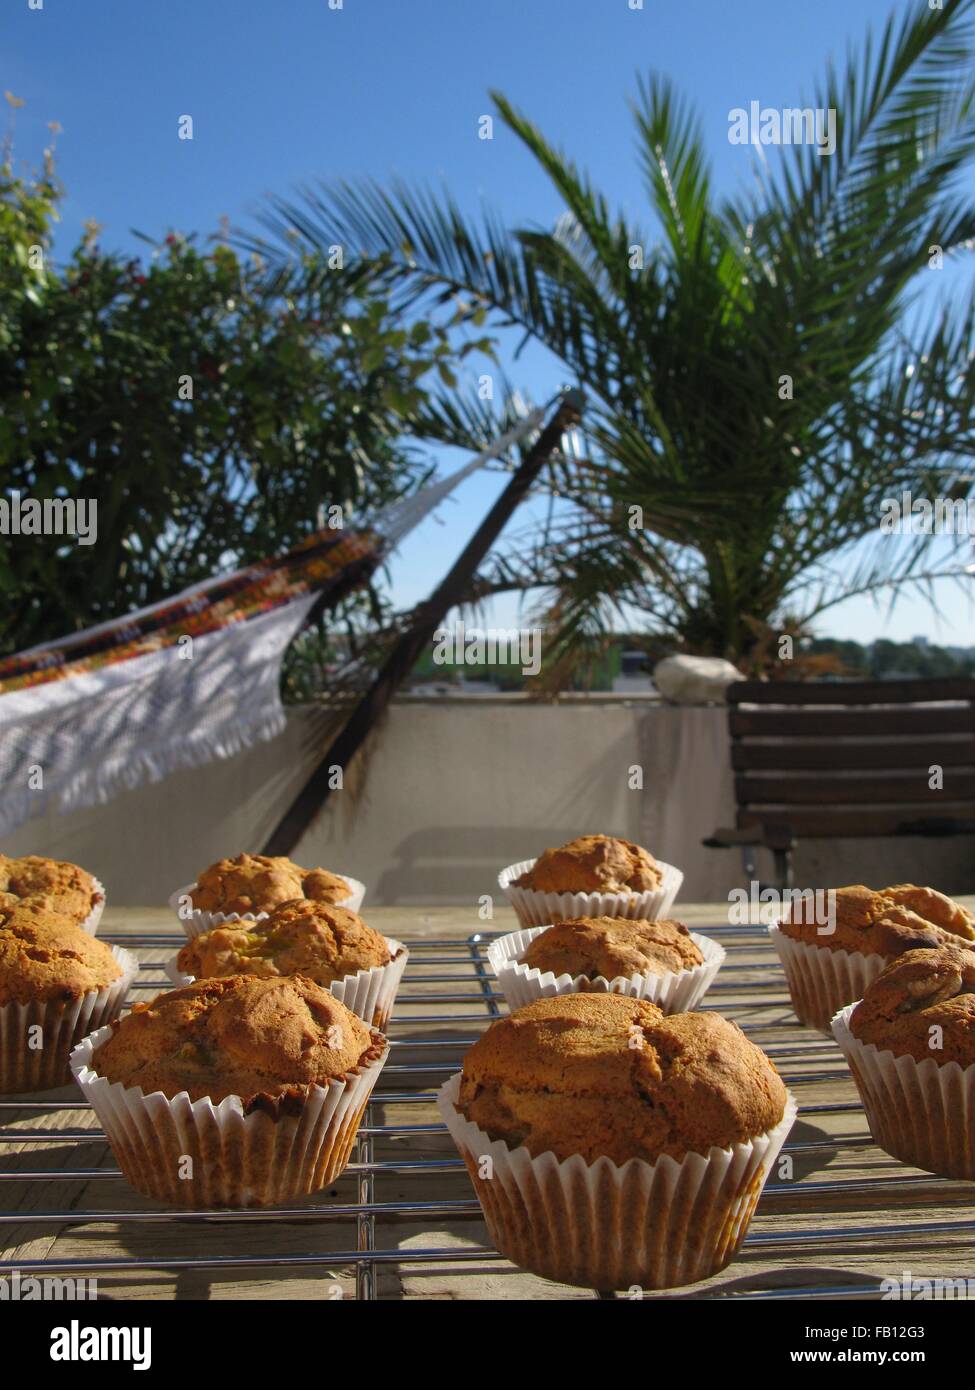 Hausgemachte Kürbis-Walnuss-Muffins am Kühlregal platziert auf einem Holztisch in der Sonne vor einer Palme und Hängematte Stockfoto